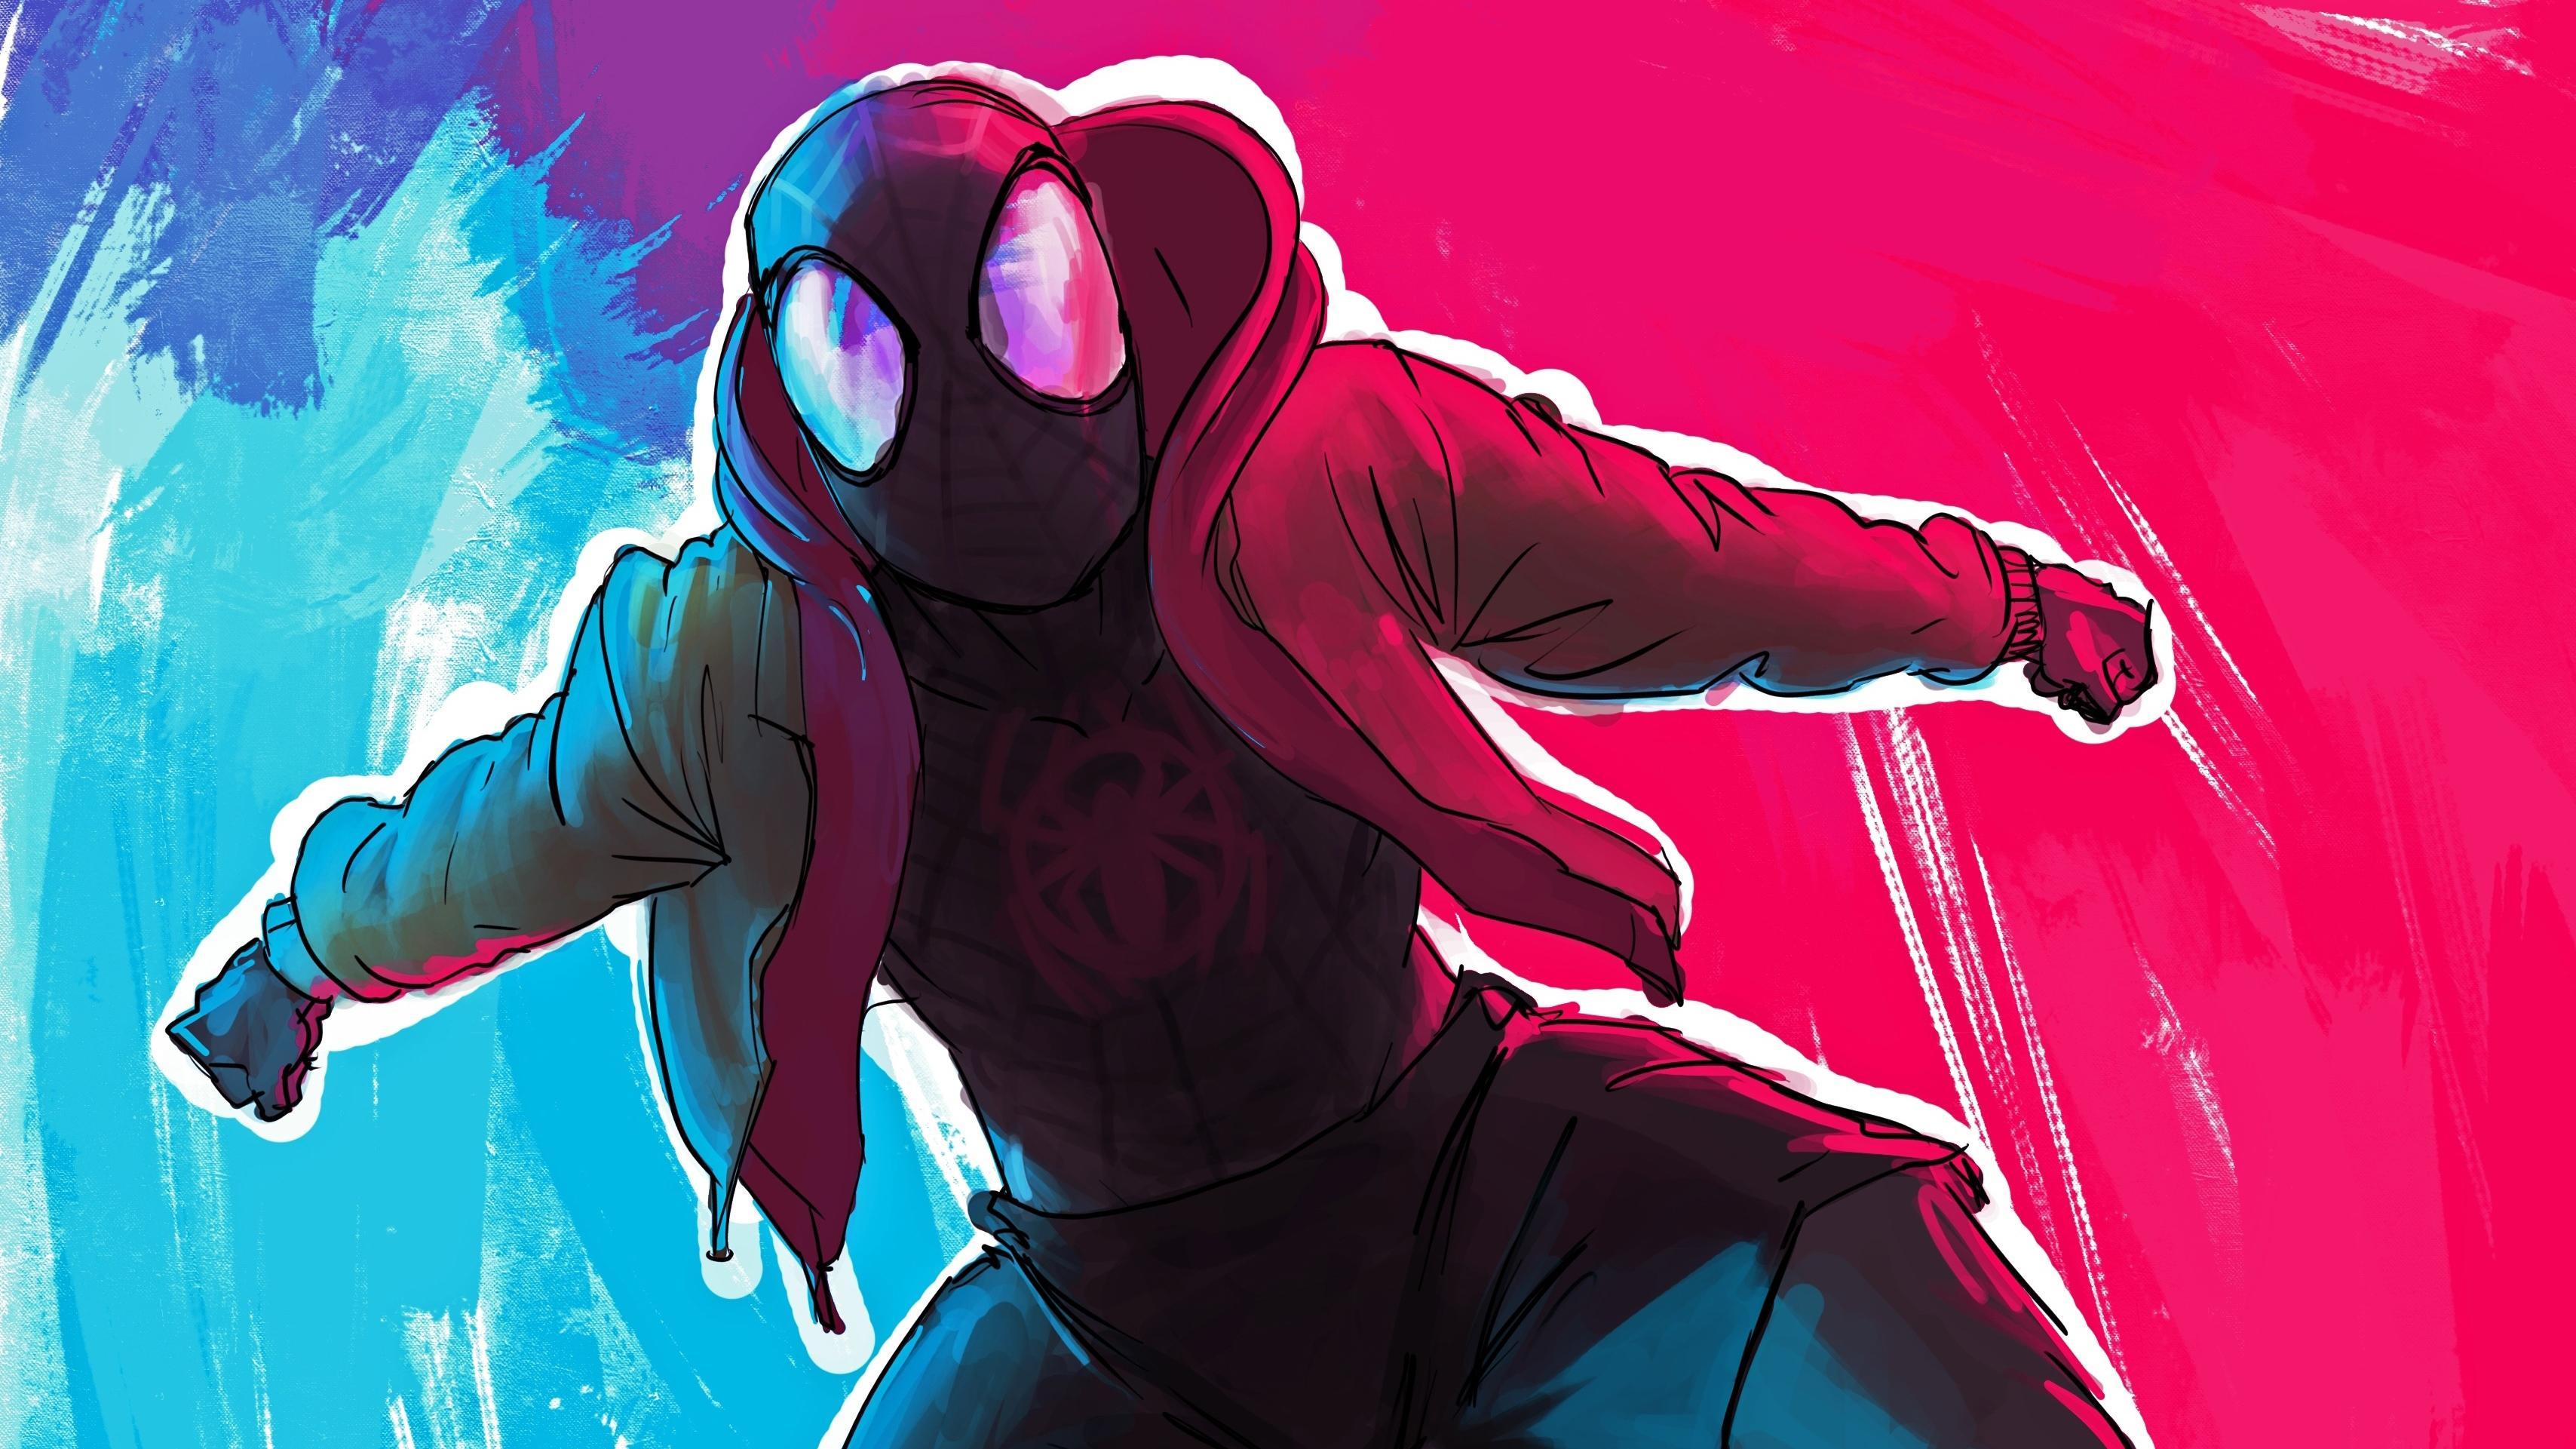 Spiderman Miles Morales Arts 4k 2019, HD Superheroes, 4k Wallpapers